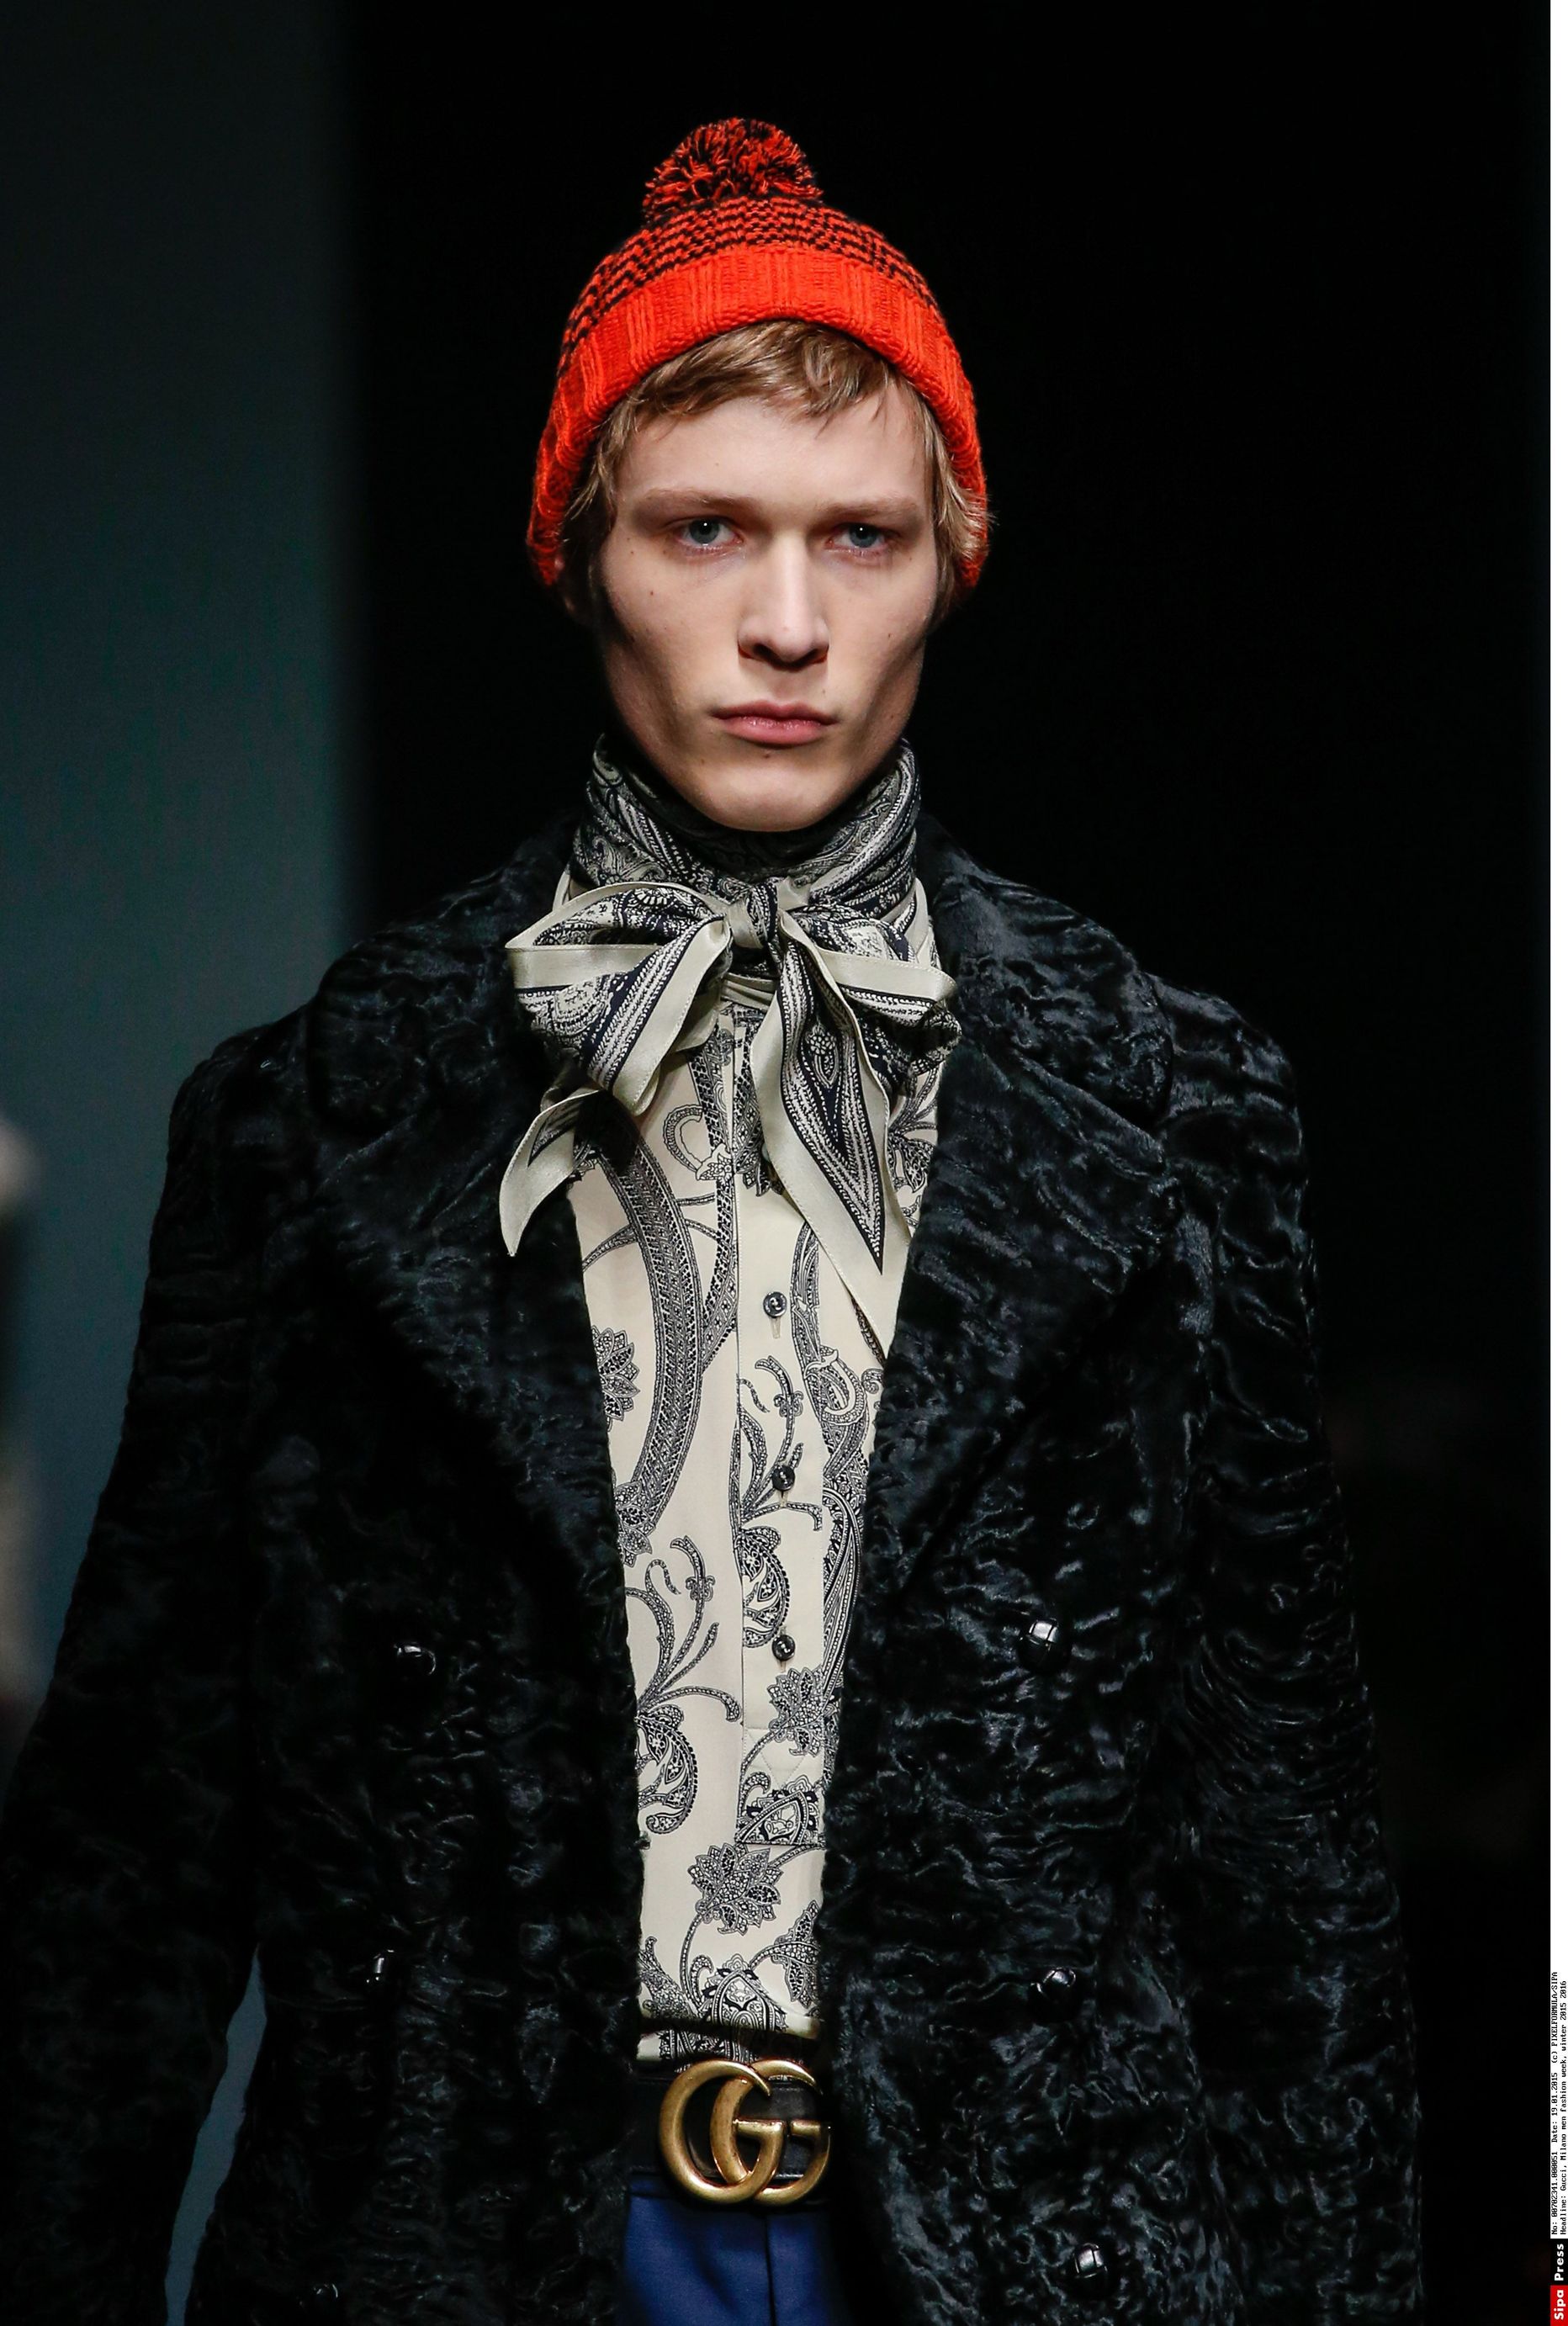 Modell kandmas Gucci loomingut  meeste 2015/2016 talvehooaja moeshow´l Milanos